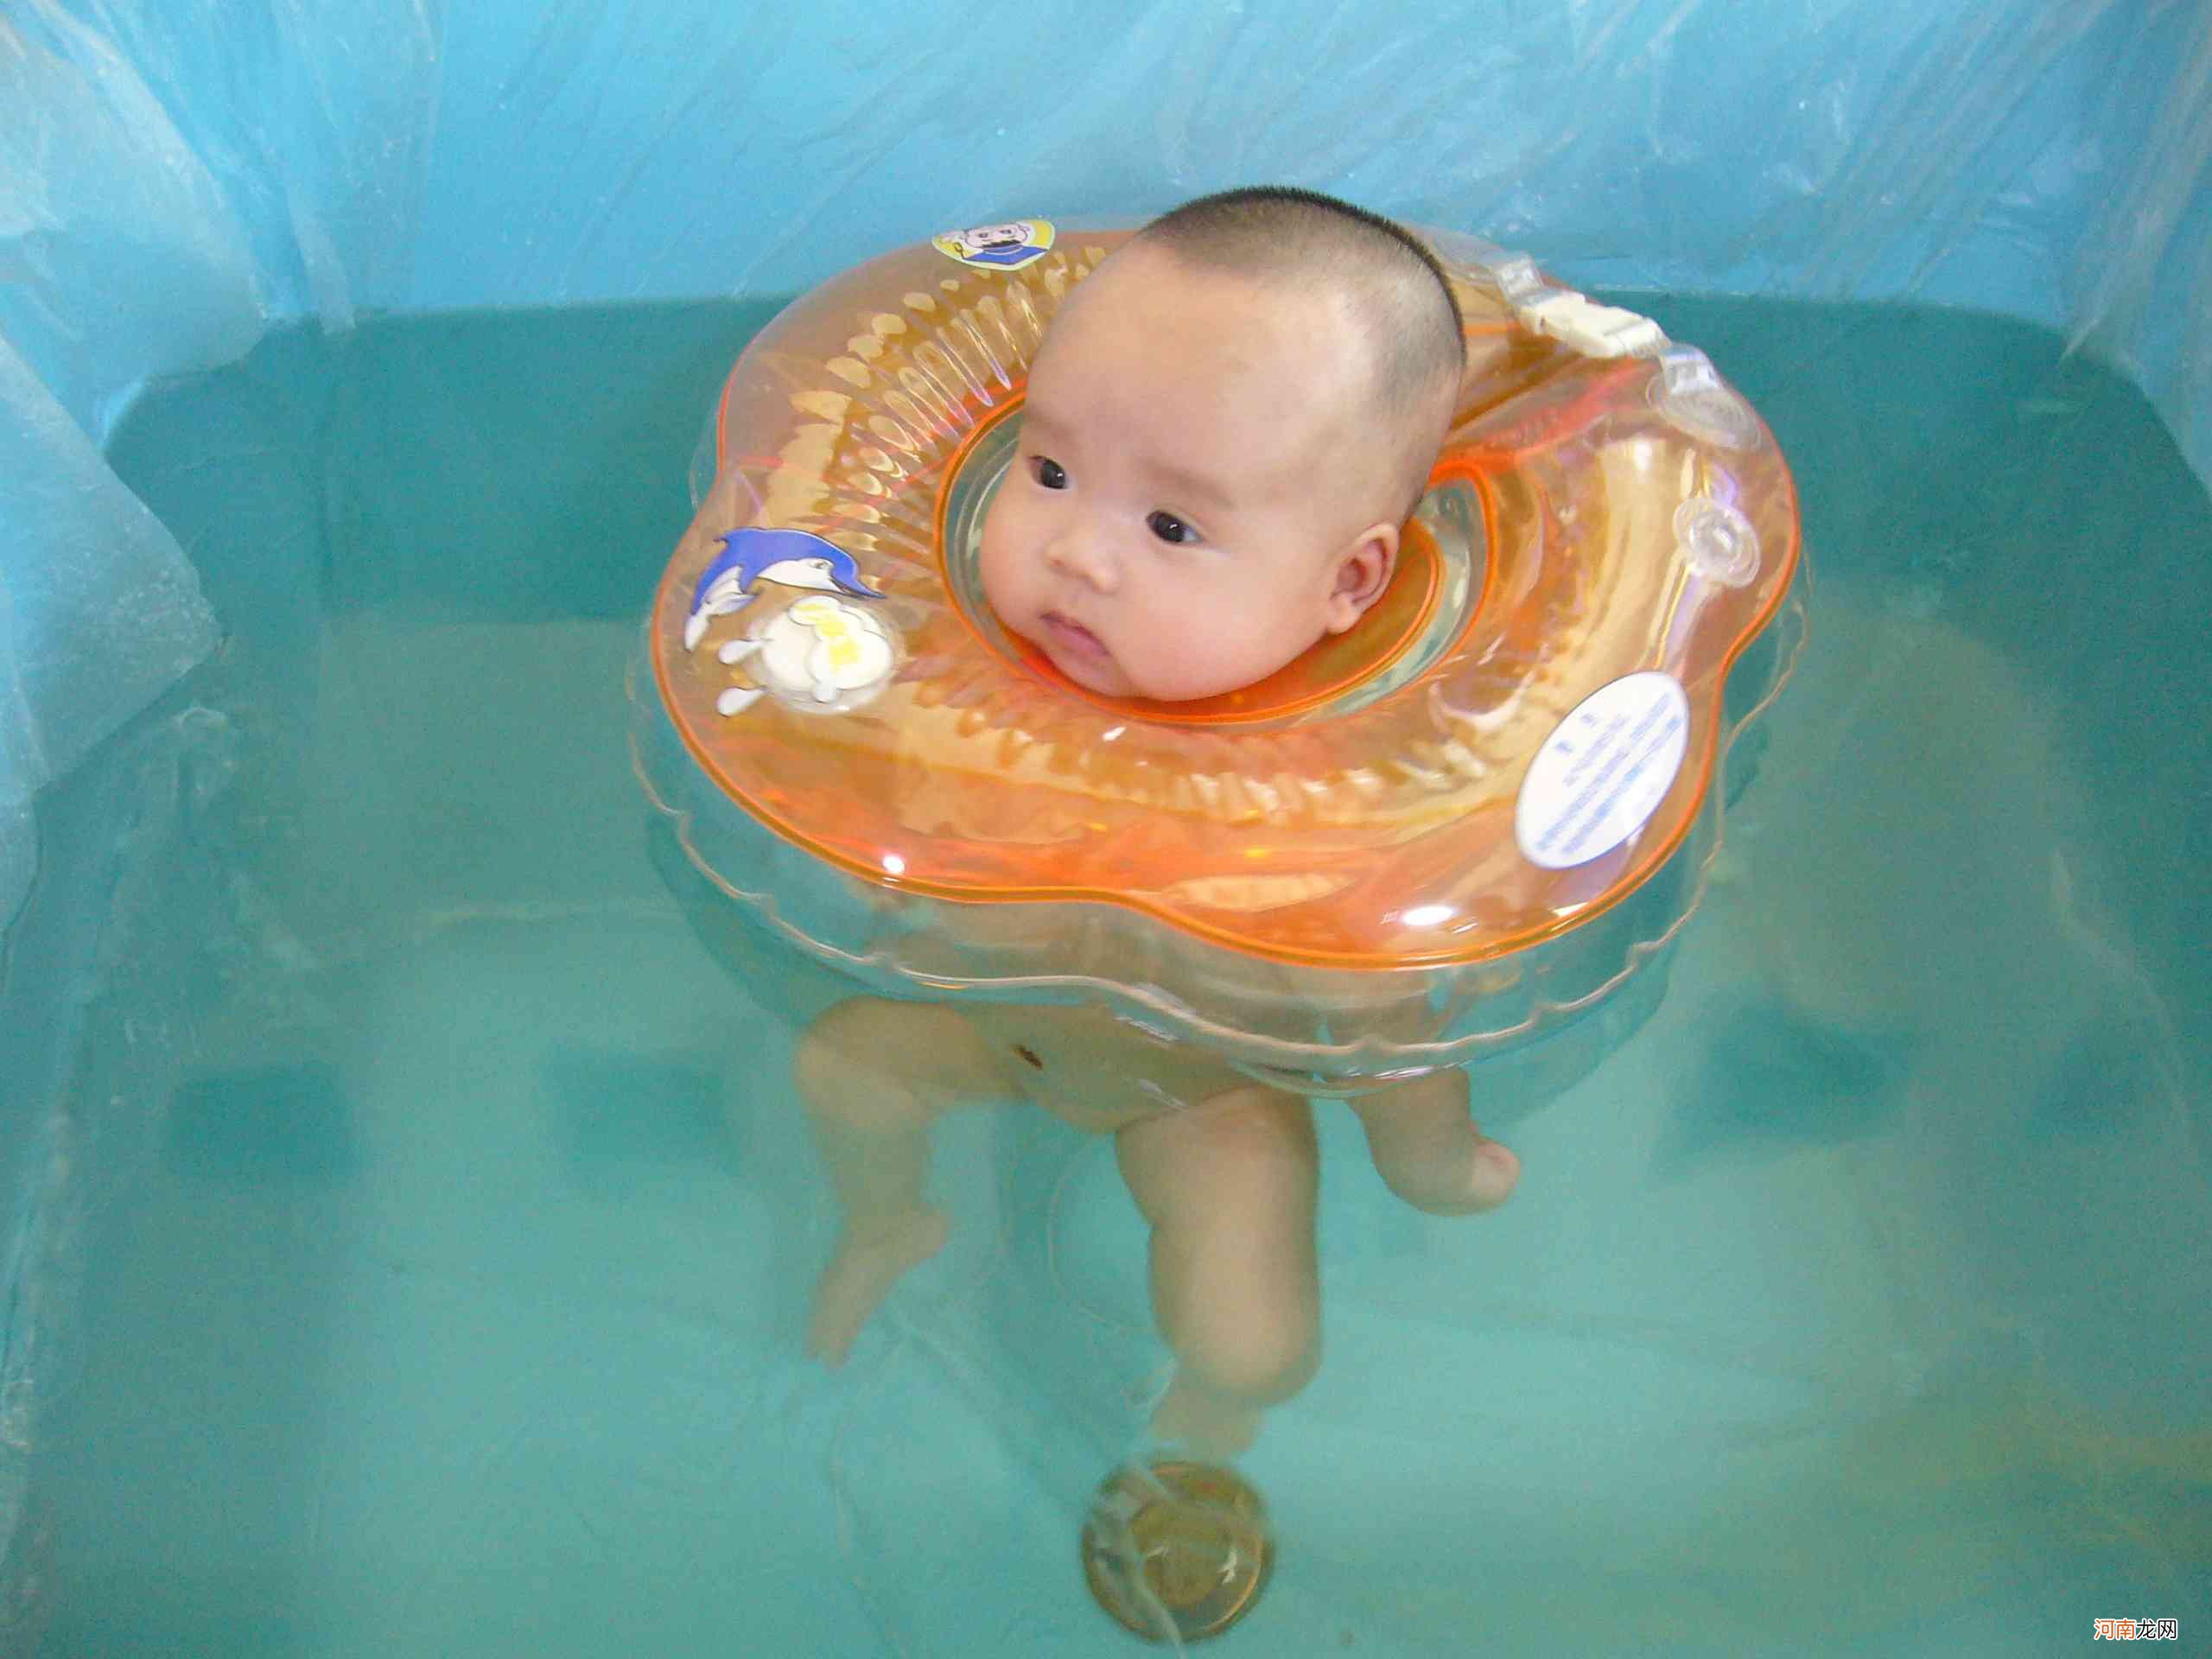 婴儿游泳有益身心根本无证据